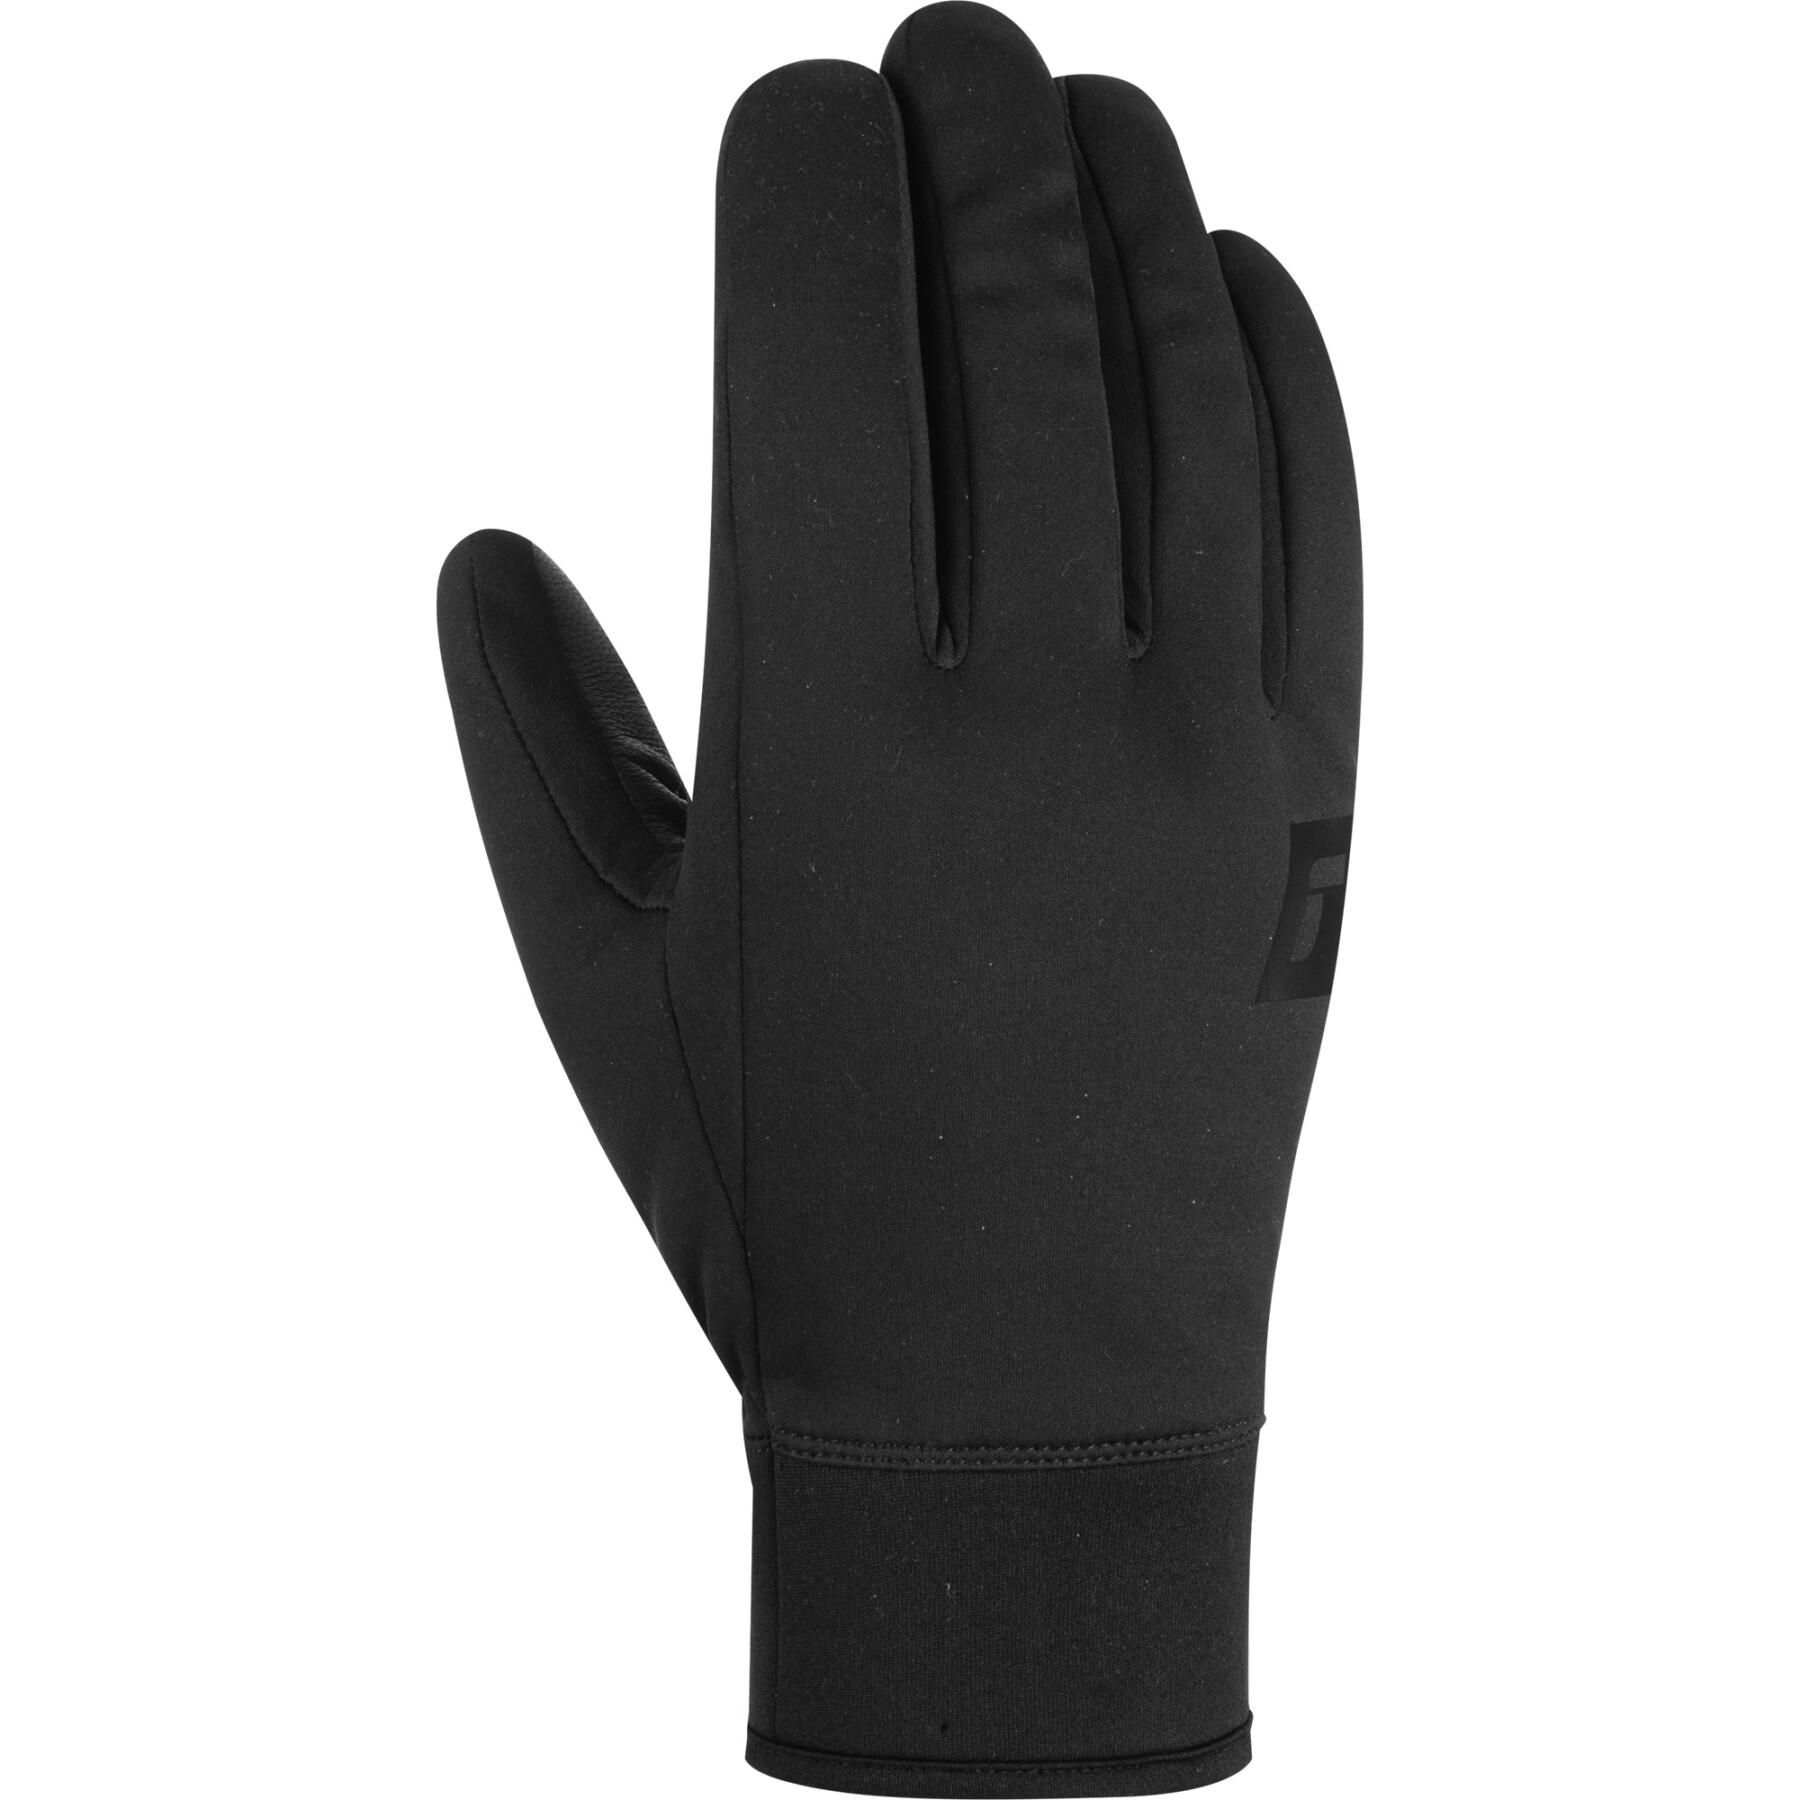 Ski gloves Reusch Purist Touch-Tec - Sports - Gloves Accessories Winter 